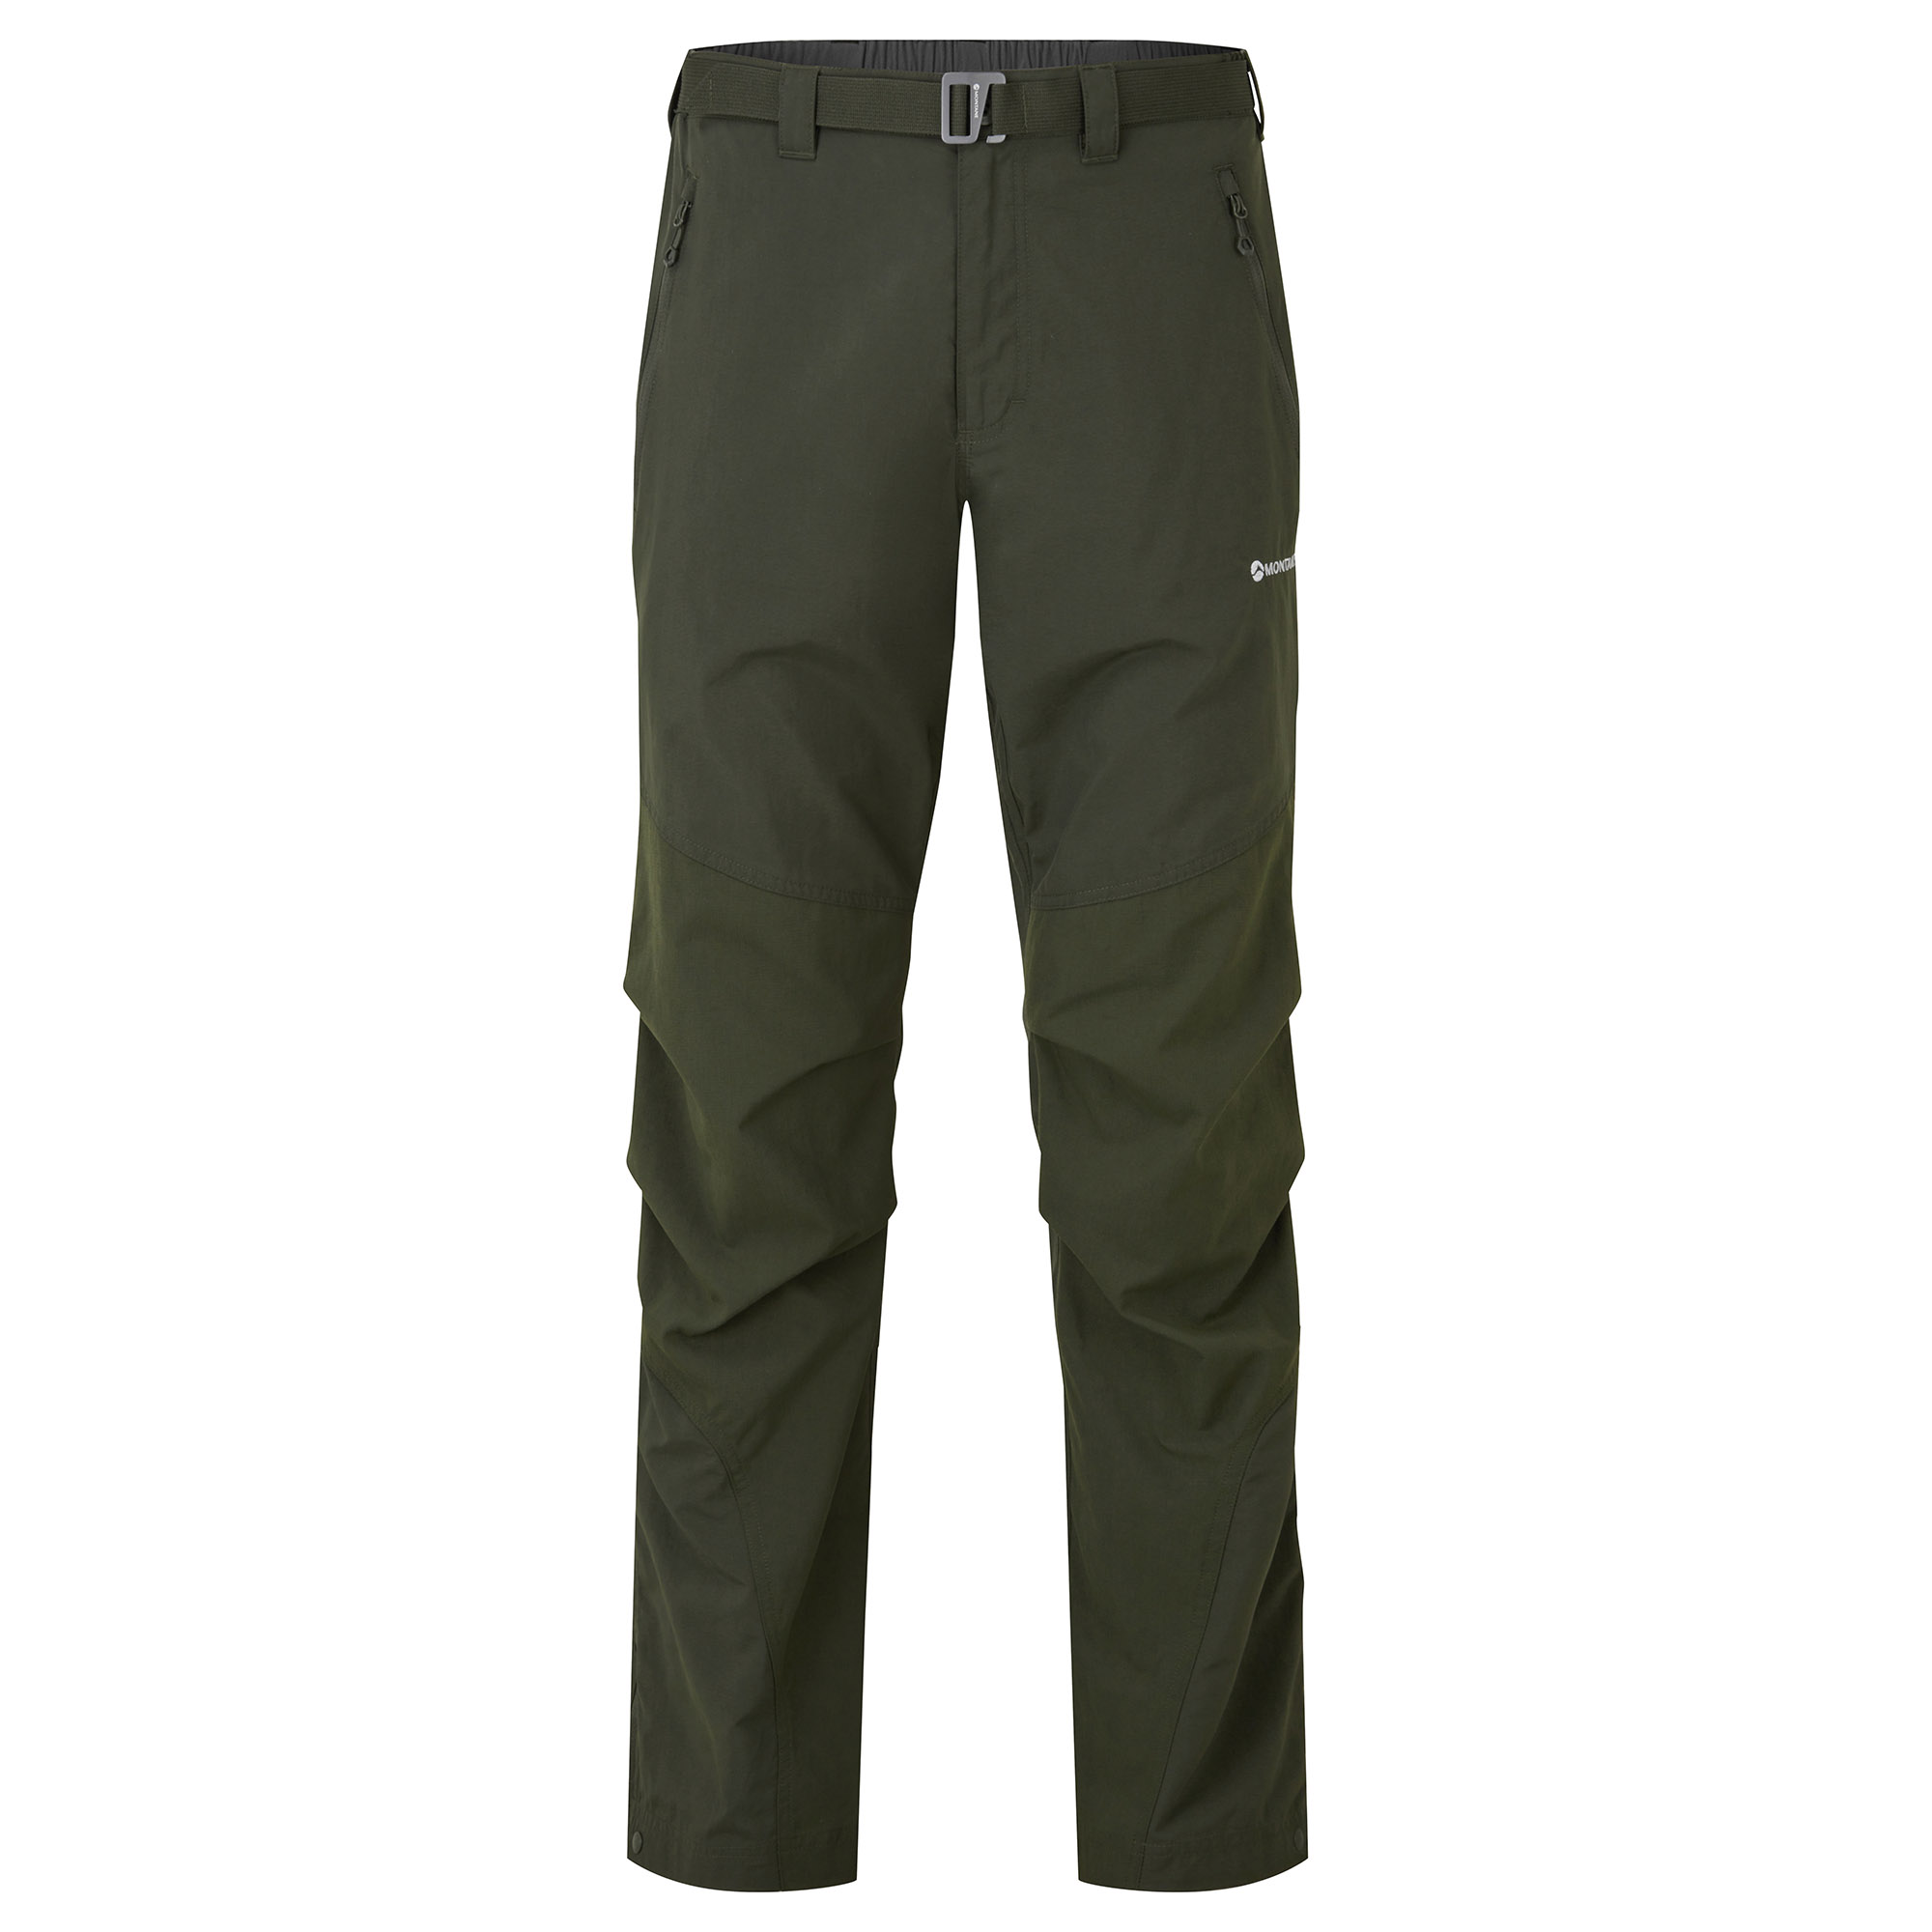 Montane pánské softshellové kalhoty Terra Pants - Zkrácené Nohavice Barva: Oak Green, Velikost: 30